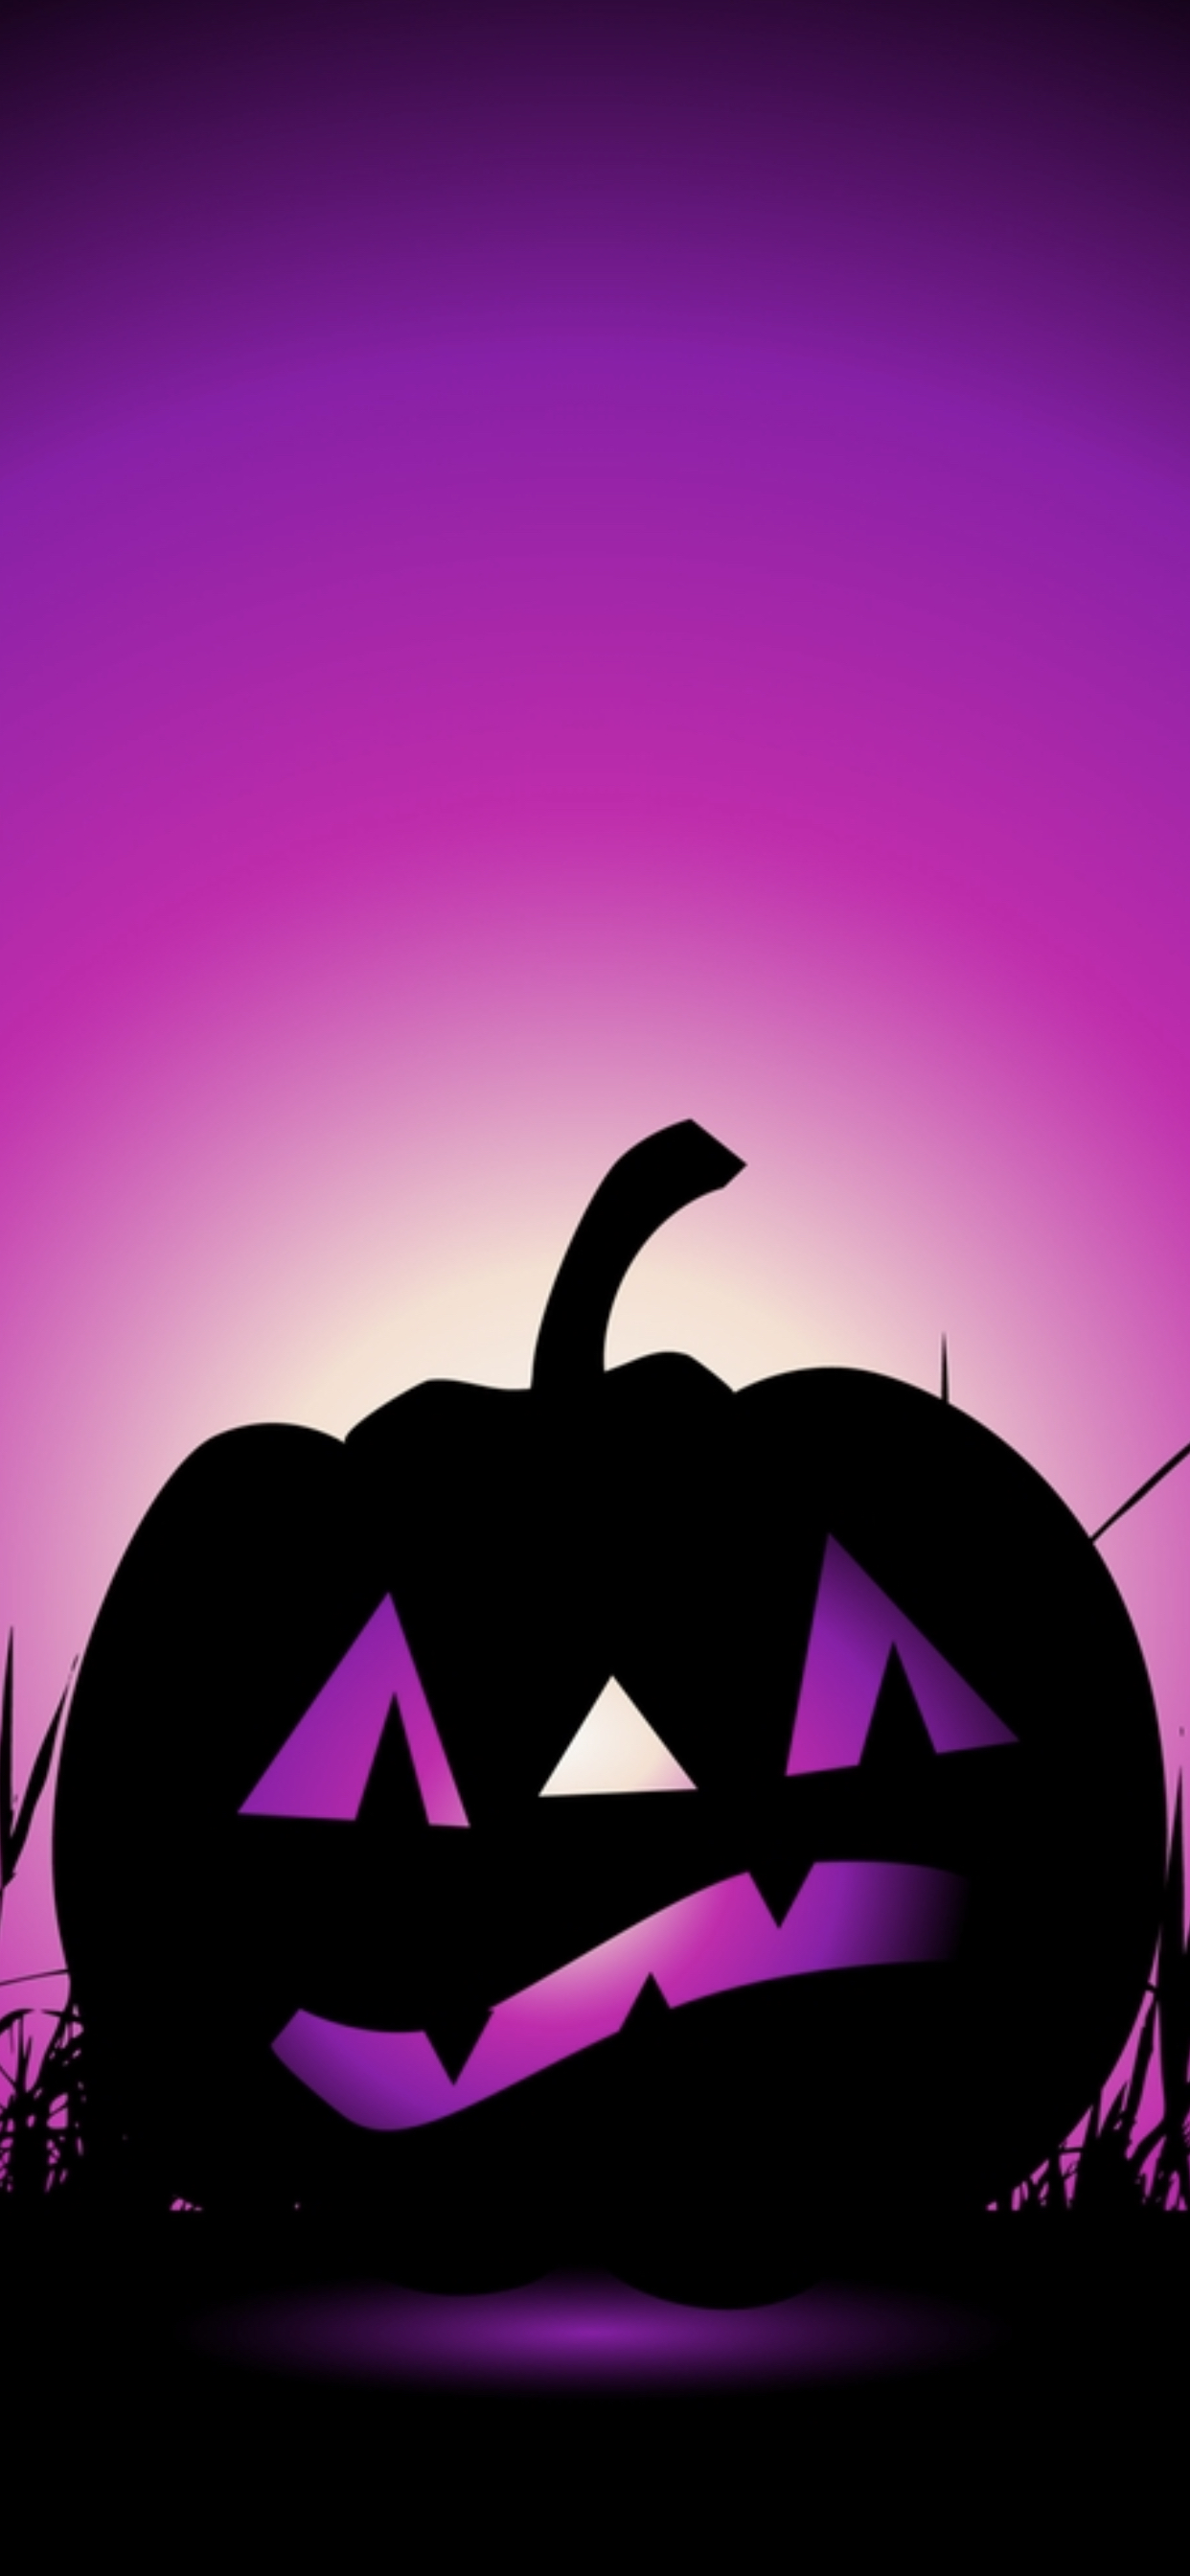 Halloween in Purple  Fantasy  Abstract Background Wallpapers on Desktop  Nexus Image 2182839